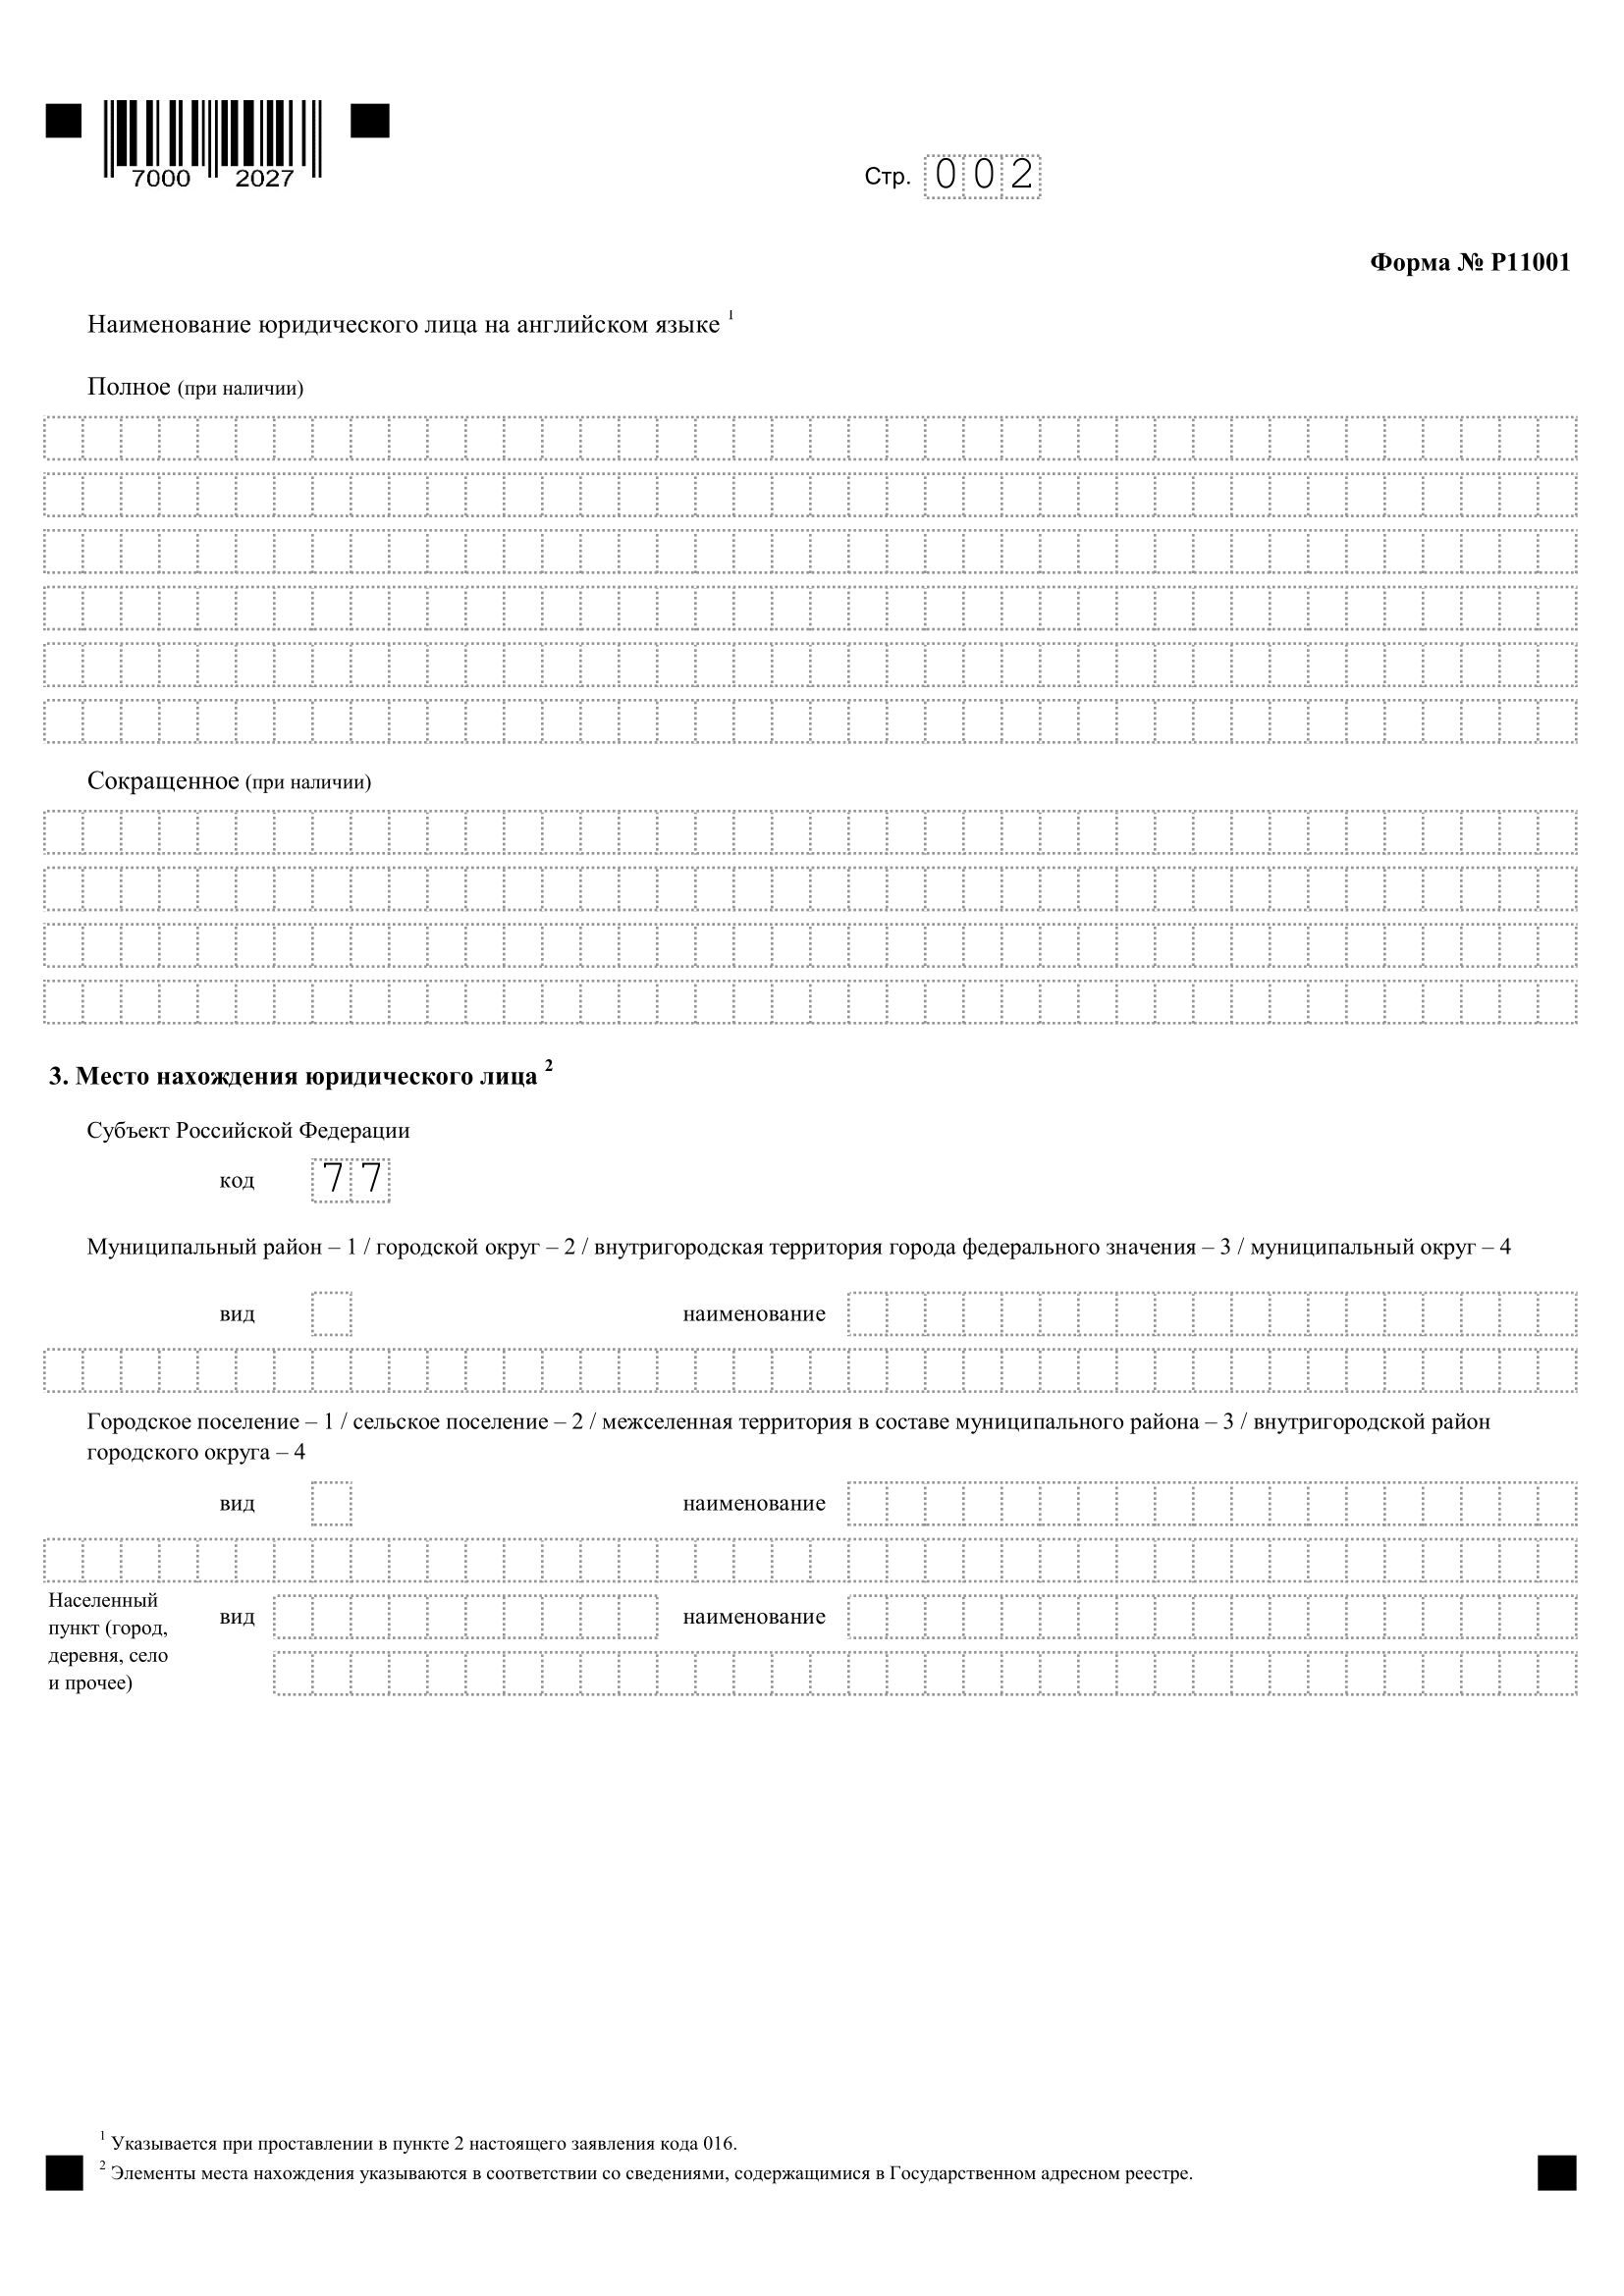 форма р11001 образец заполнения с одним учредителем, страница 2